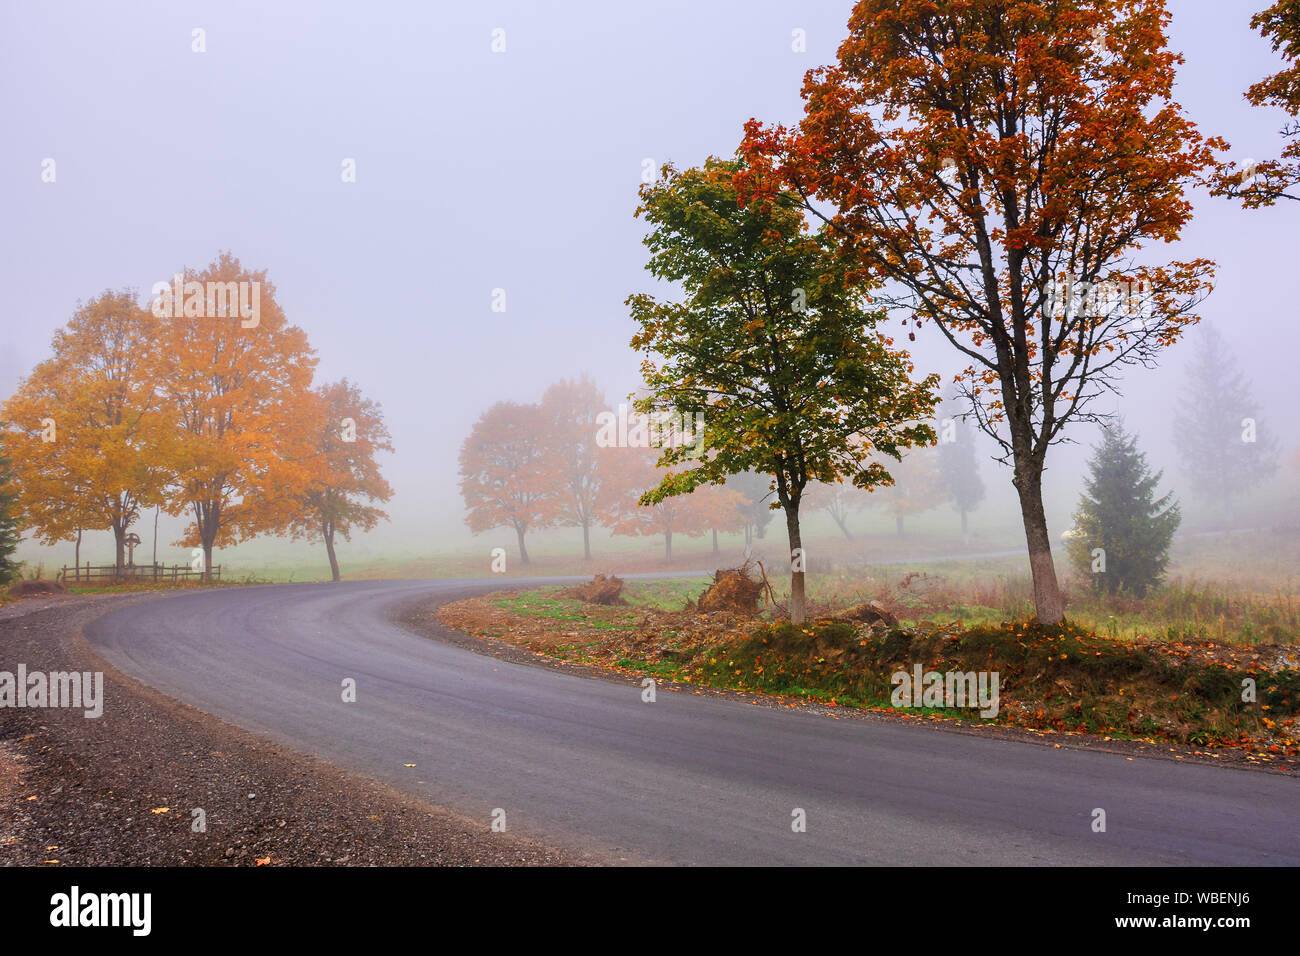 Straße windet sich durch Nebel im Herbst. schönen Herbst Landschaft mit Bäumen im buntes Laub. erstaunlich Oktober Wetter am Morgen. Stockfoto